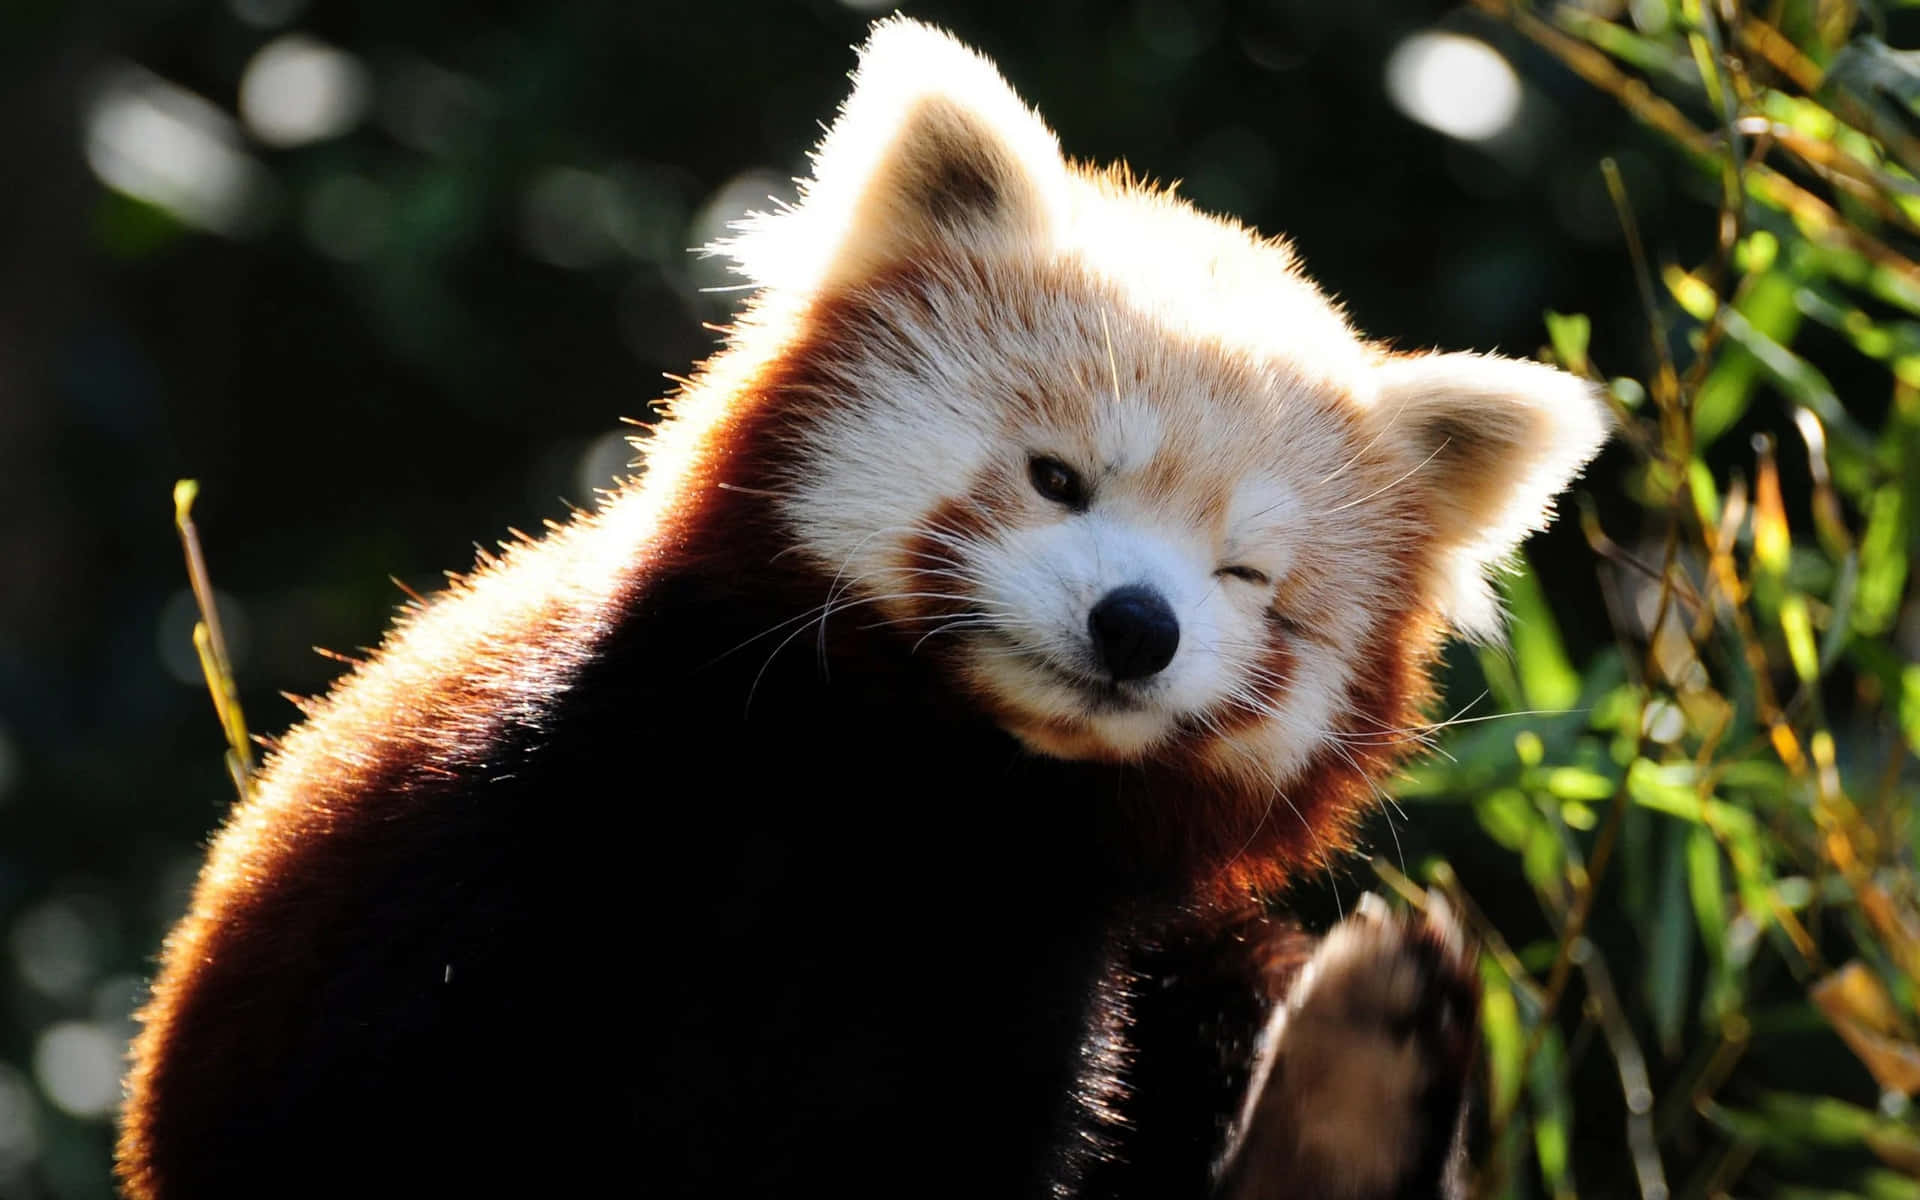 Cute Red Panda Living in Its Natural Habitat